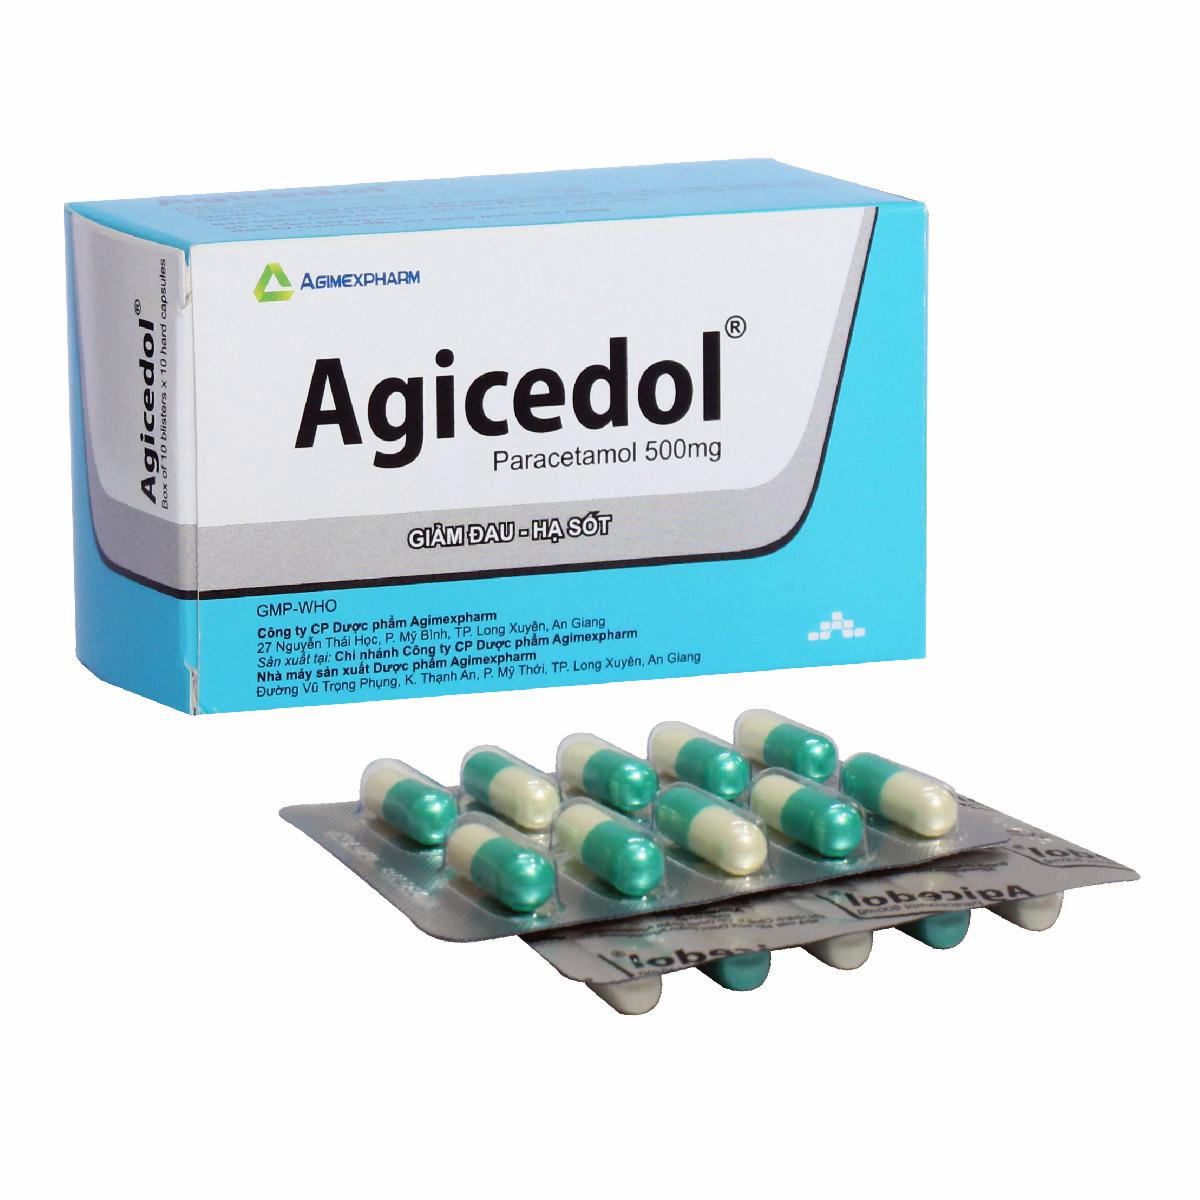 Agicedol (Paracetamol) 500mg Agimexpharm (H/100v)